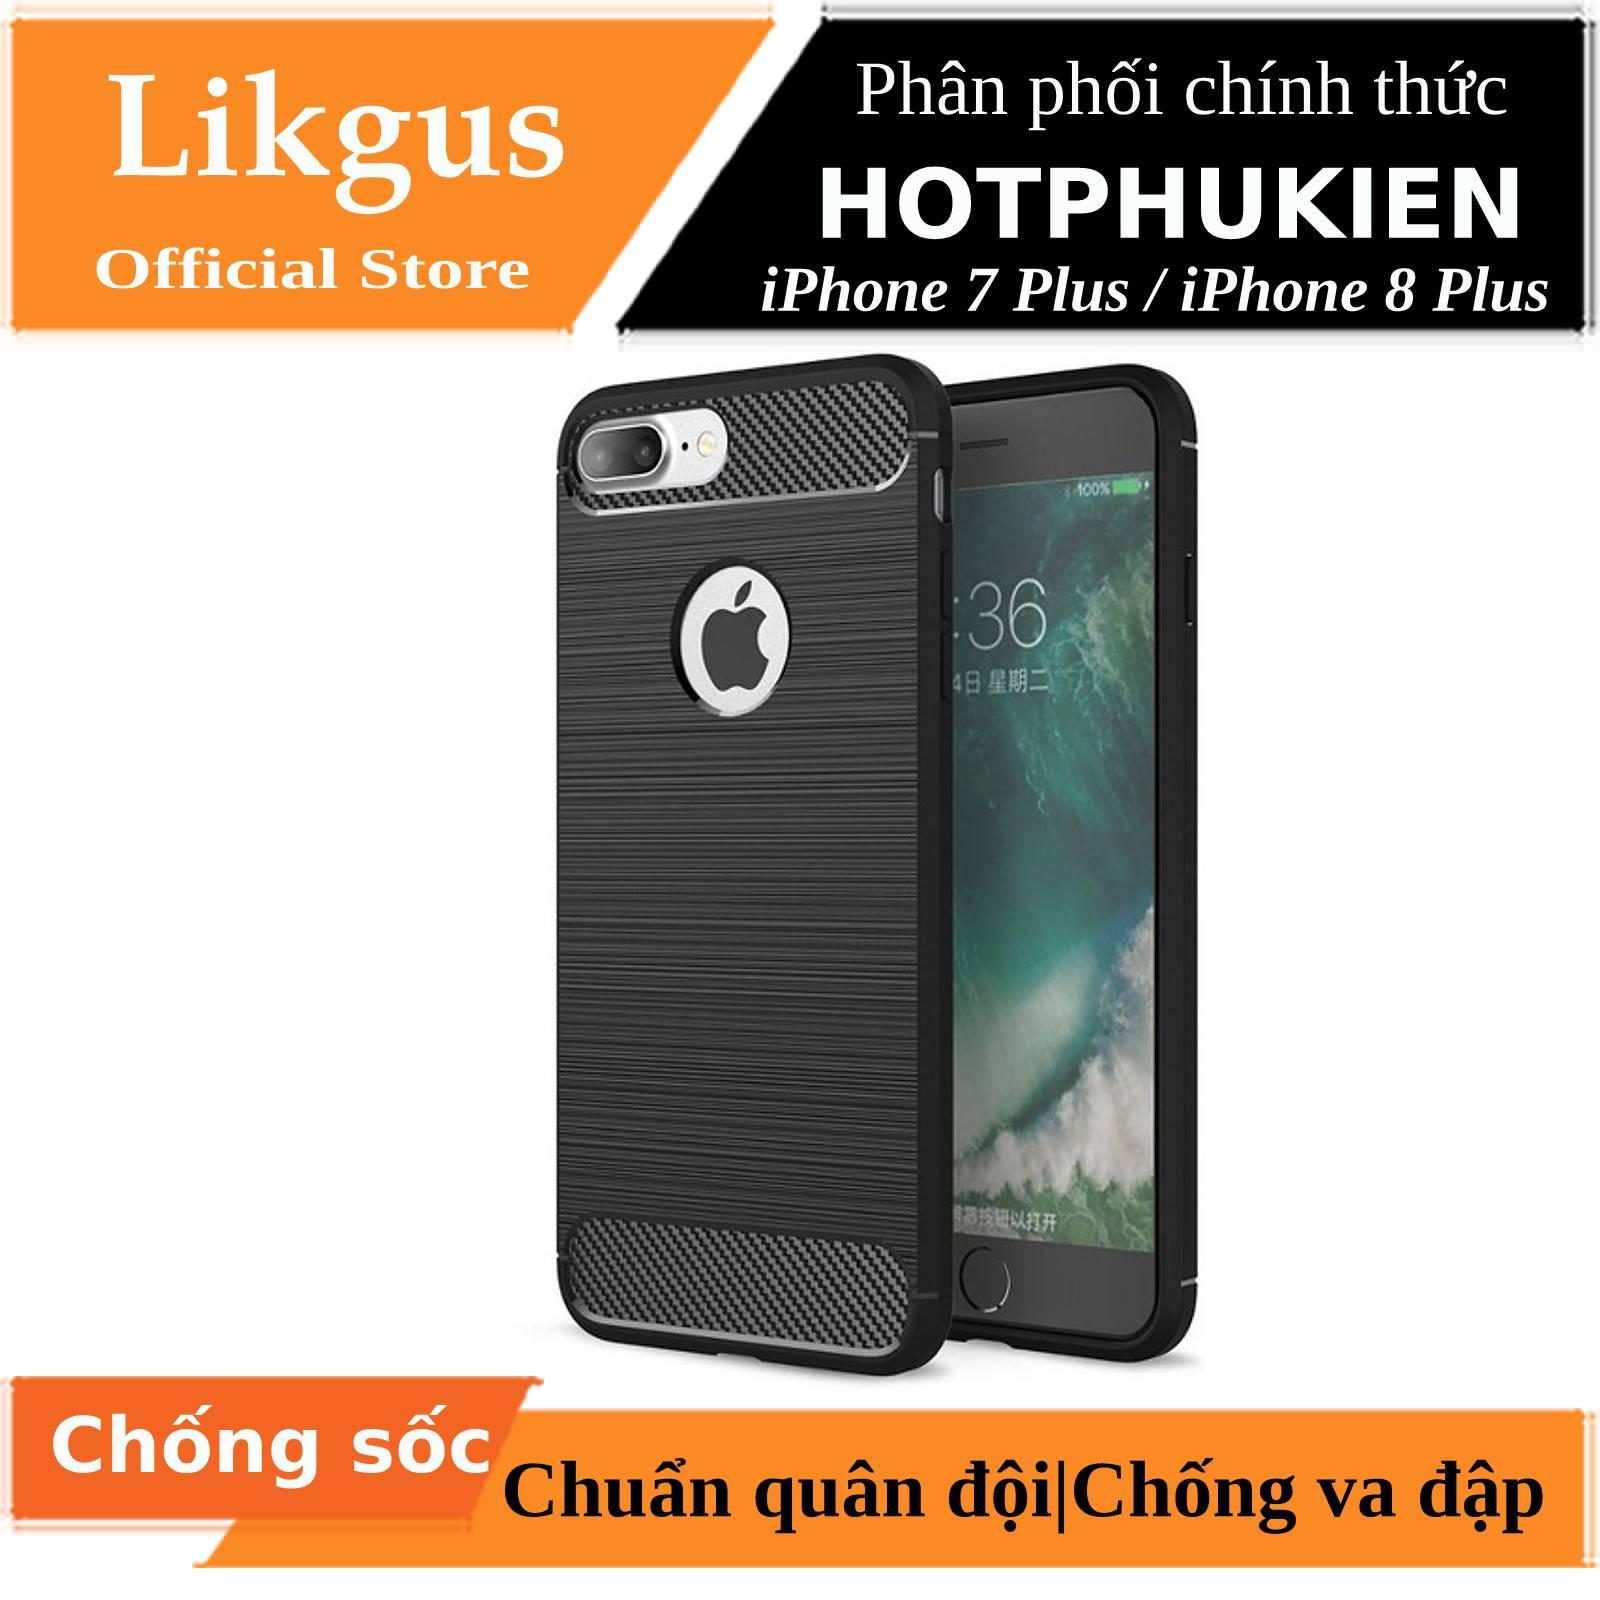 [HCM]Ốp lưng chống sốc cho iPhone 7 Plus / iPhone 8 Plus hiệu Likgus (hàng chuẩn chống va đập chống vân tay) - phân phối bởi HotPhuKien